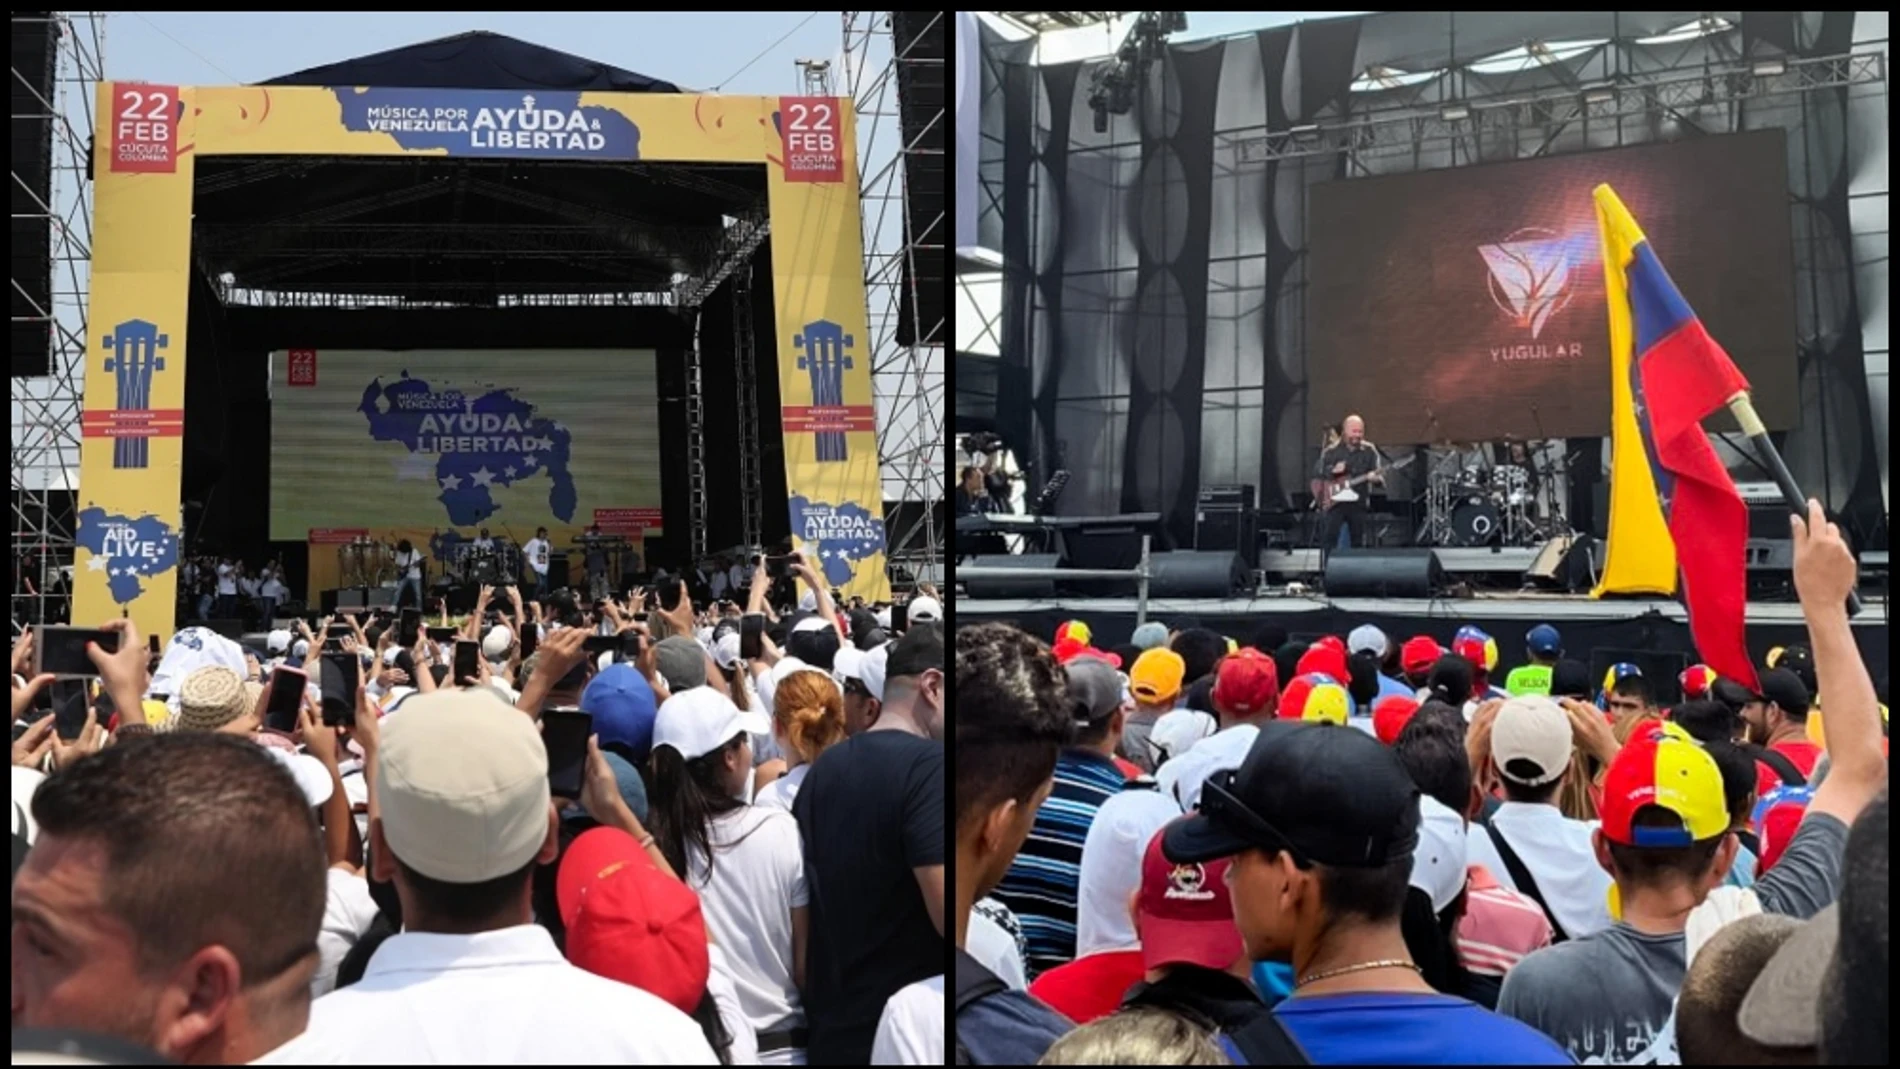 Imagen de los conciertos en Colombia y Venezuela